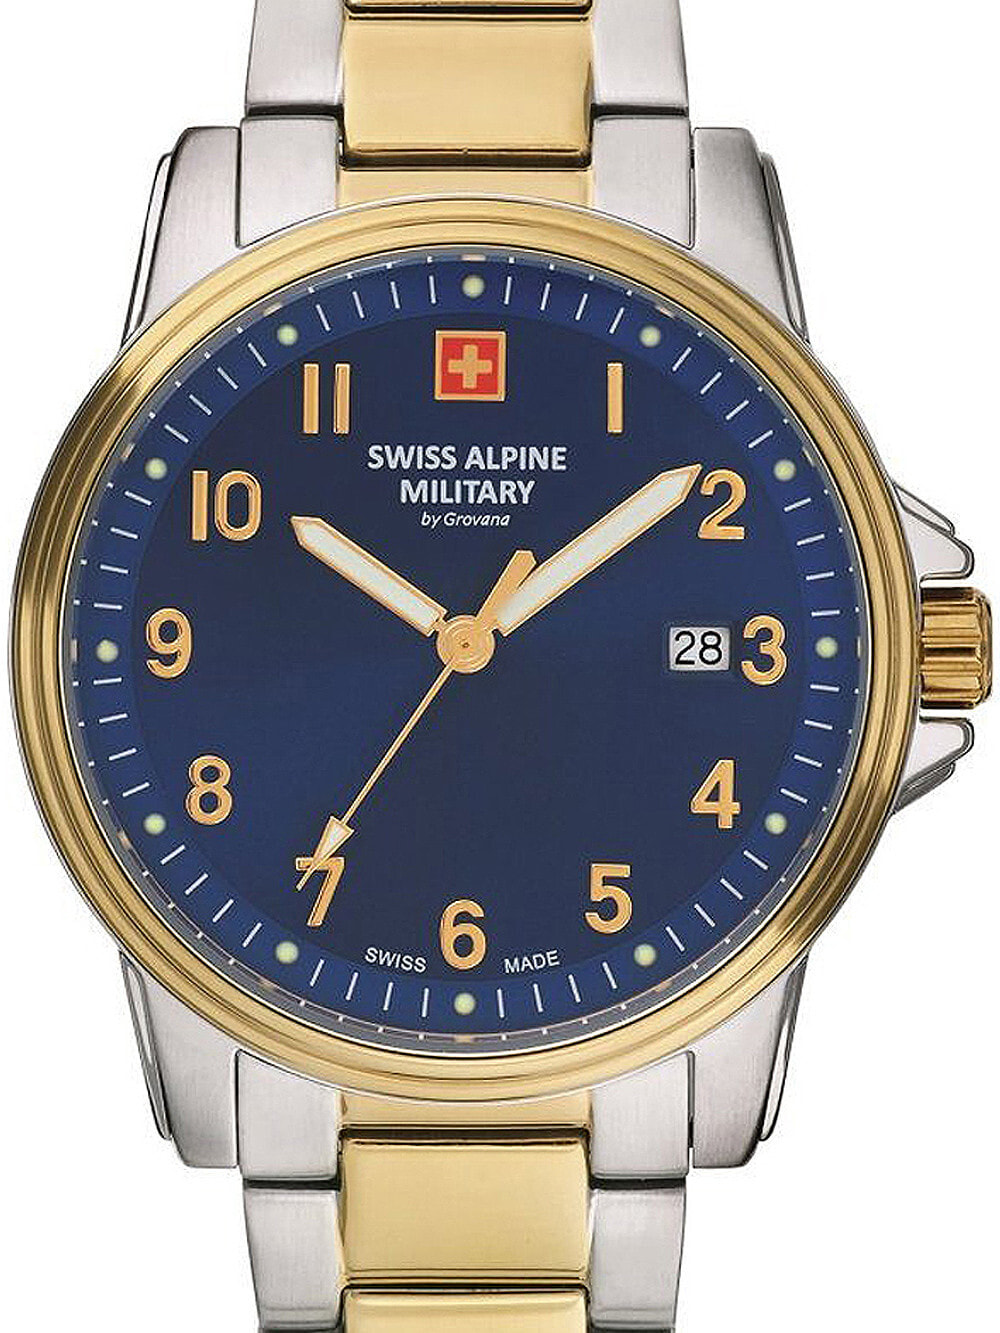 Мужские наручные часы с серебряным браслетом Swiss Alpine Military 7011.1145 mens 40mm 10ATM